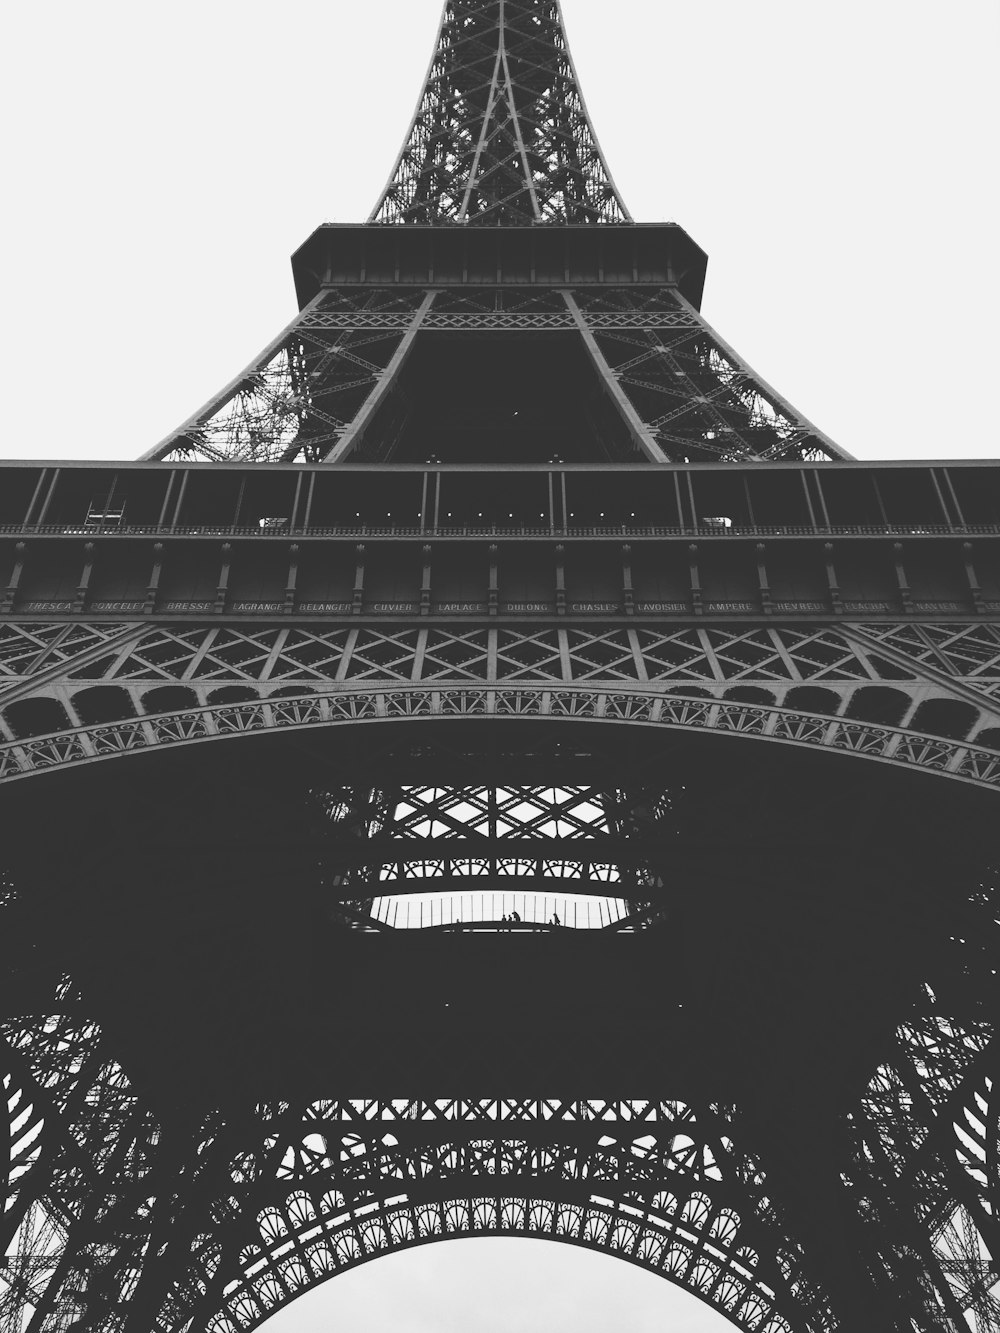 Photo en niveaux de gris de la Tour Eiffel de Paris